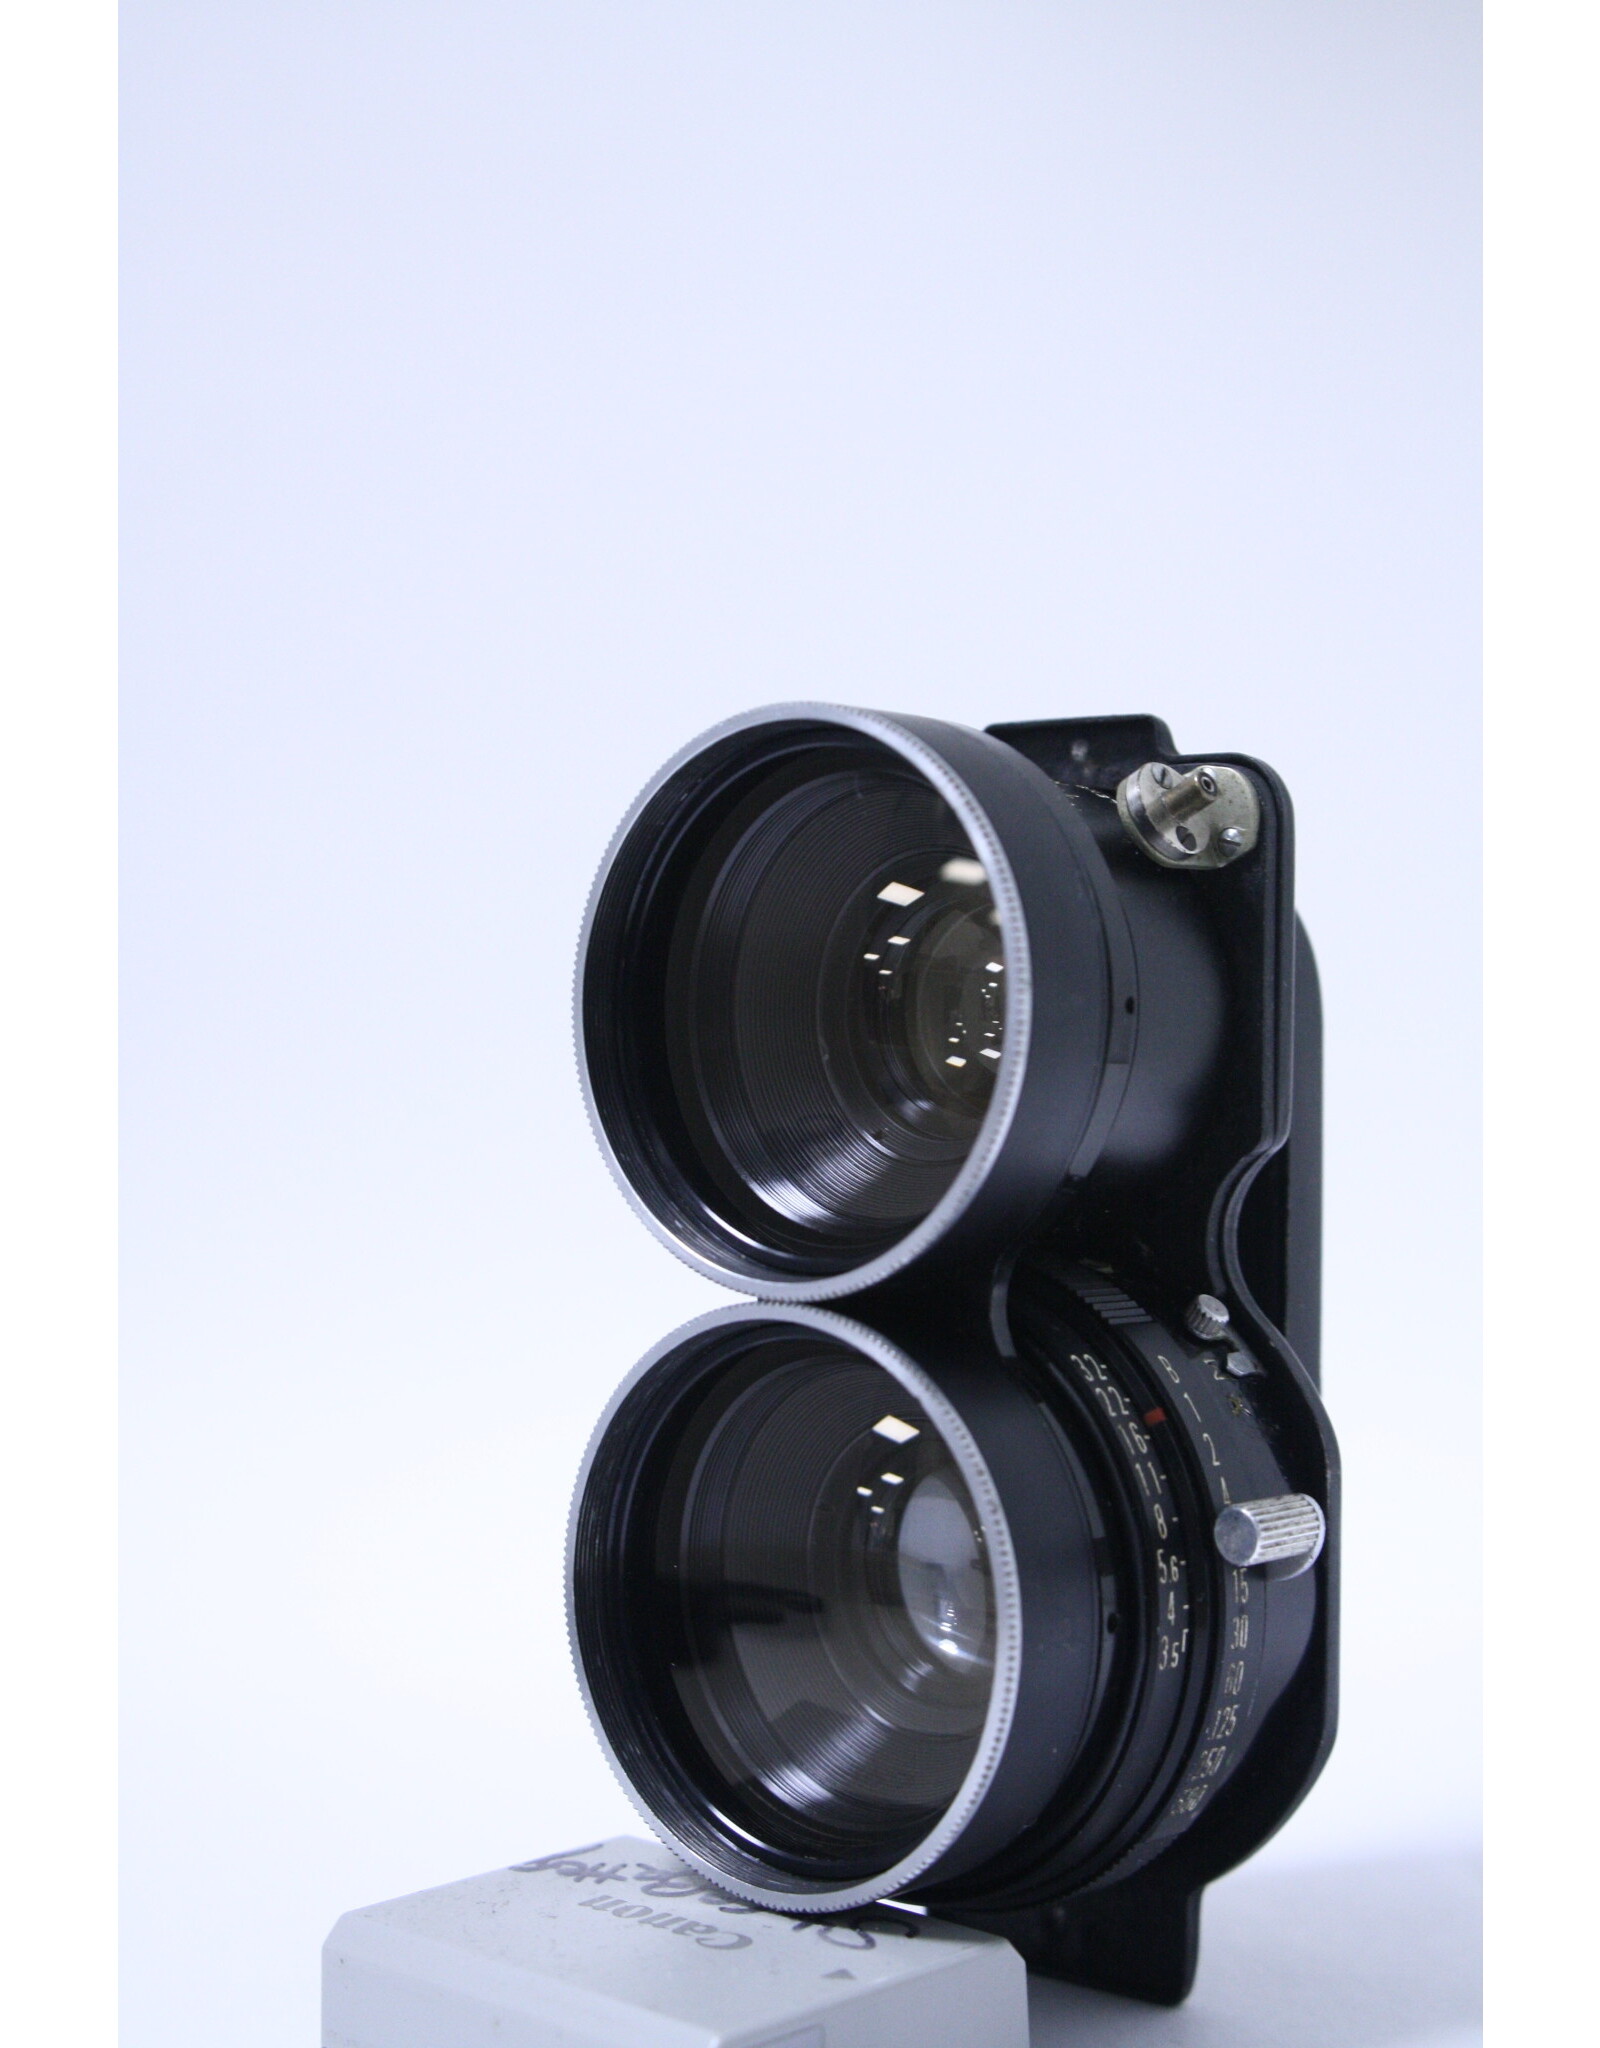 Mamiya-Sekor Mamiya Sekor 65mm f/3.5 Lens for Mamiya Twin Lens (C220/330) Camera (Pre-Owned)